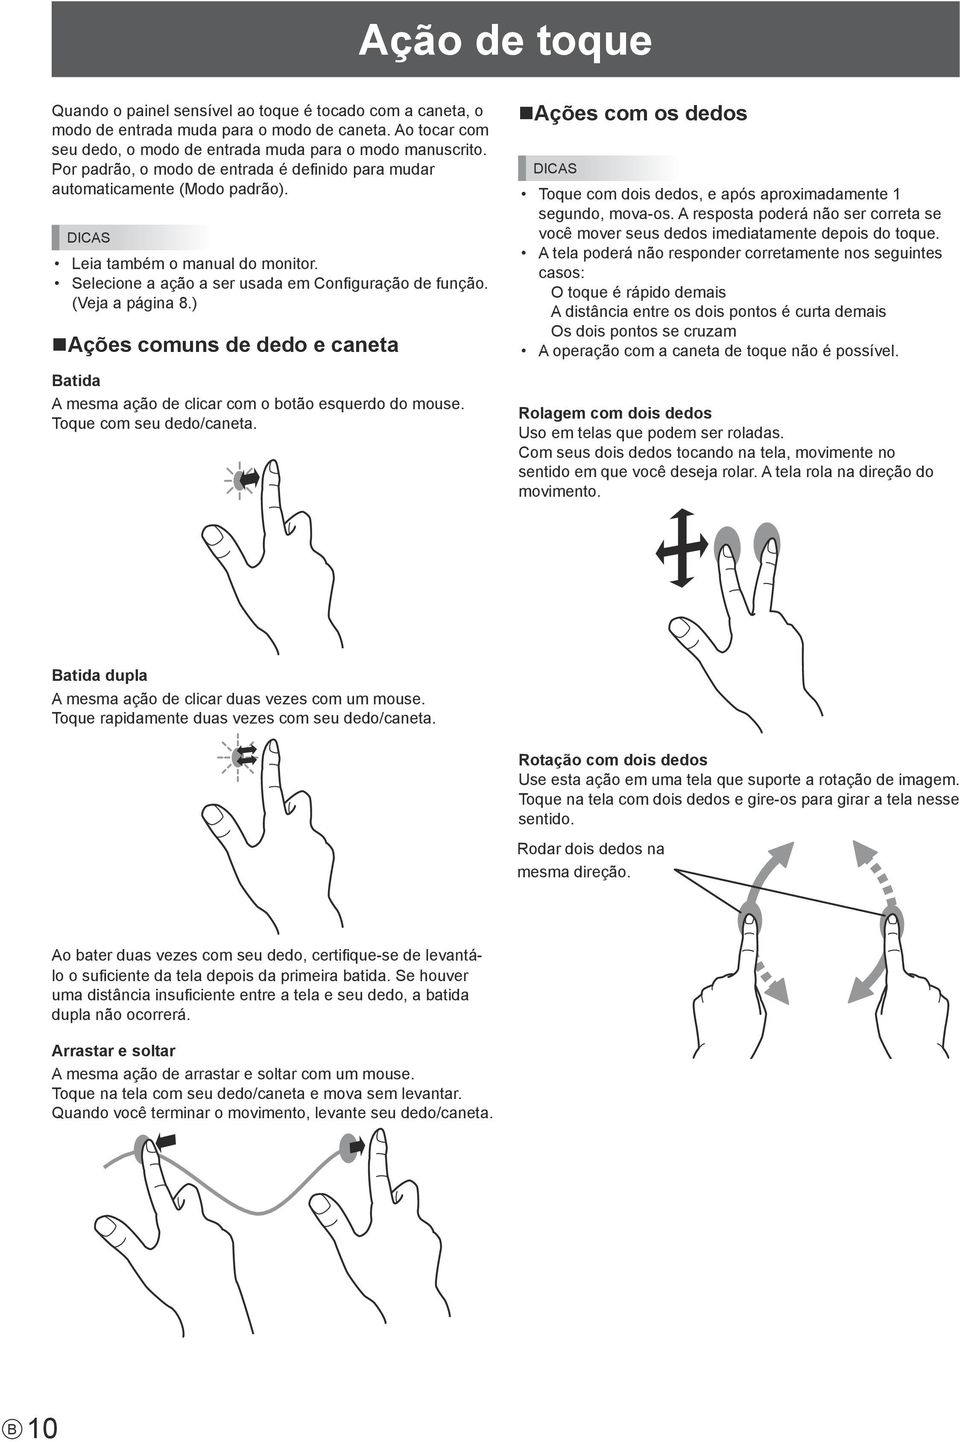 ) Ações comuns de dedo e caneta Batida A mesma ação de clicar com o botão esquerdo do mouse. Toque com seu dedo/caneta.